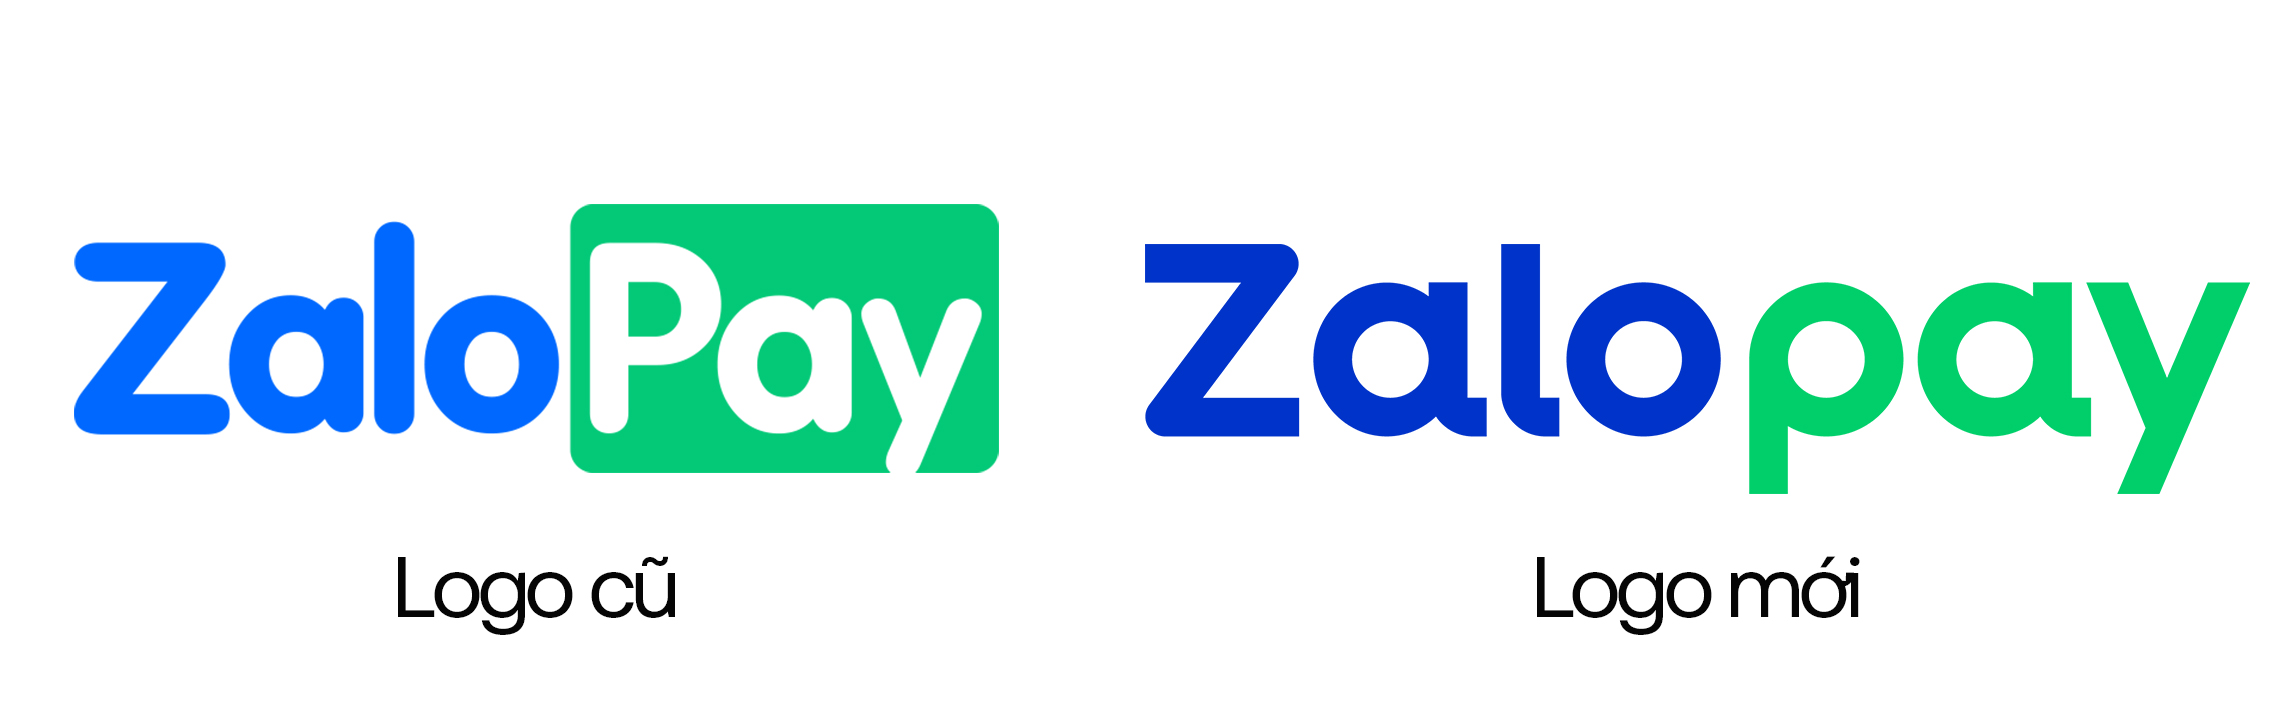 Zalopay làm mới từ nhận diện thương hiệu đến trải nghiệm và sản phẩm tài chính - 5. Logo cu moi